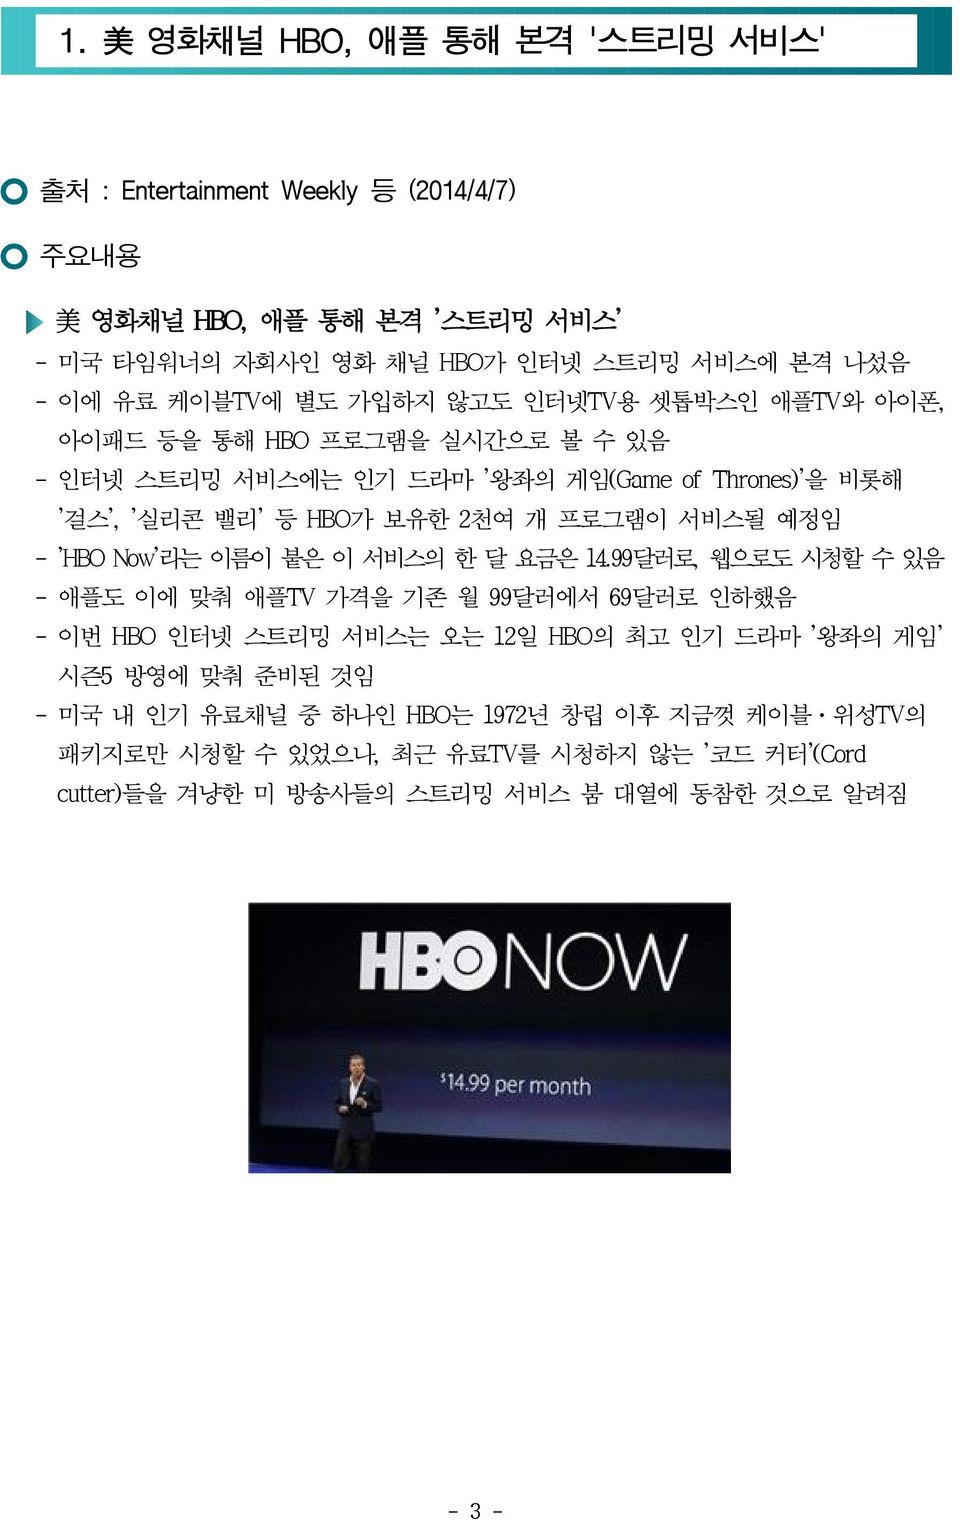 프로그램이 서비스될 예정임 - 'HBO Now'라는 이름이 붙은 이 서비스의 한 달 요금은 14.